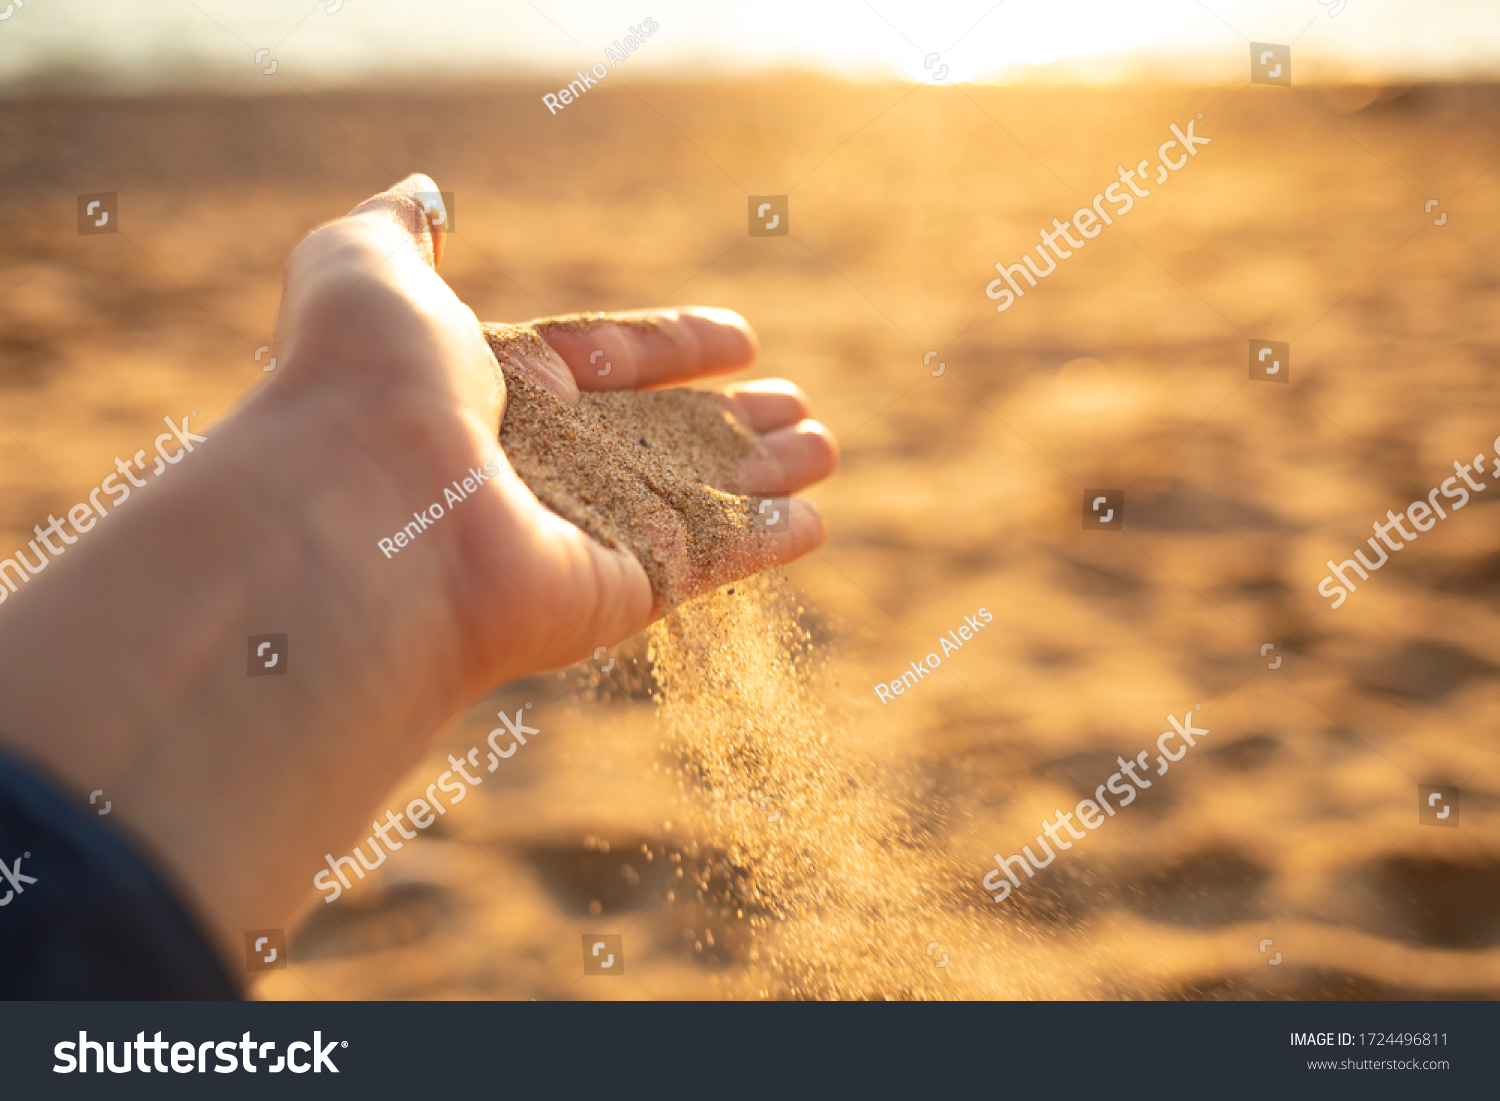 Сыплется. Песок сыпется. Песок сыпется или сыплется. Мужские и женские руки сыпят песок. Из вас песок сыпется.